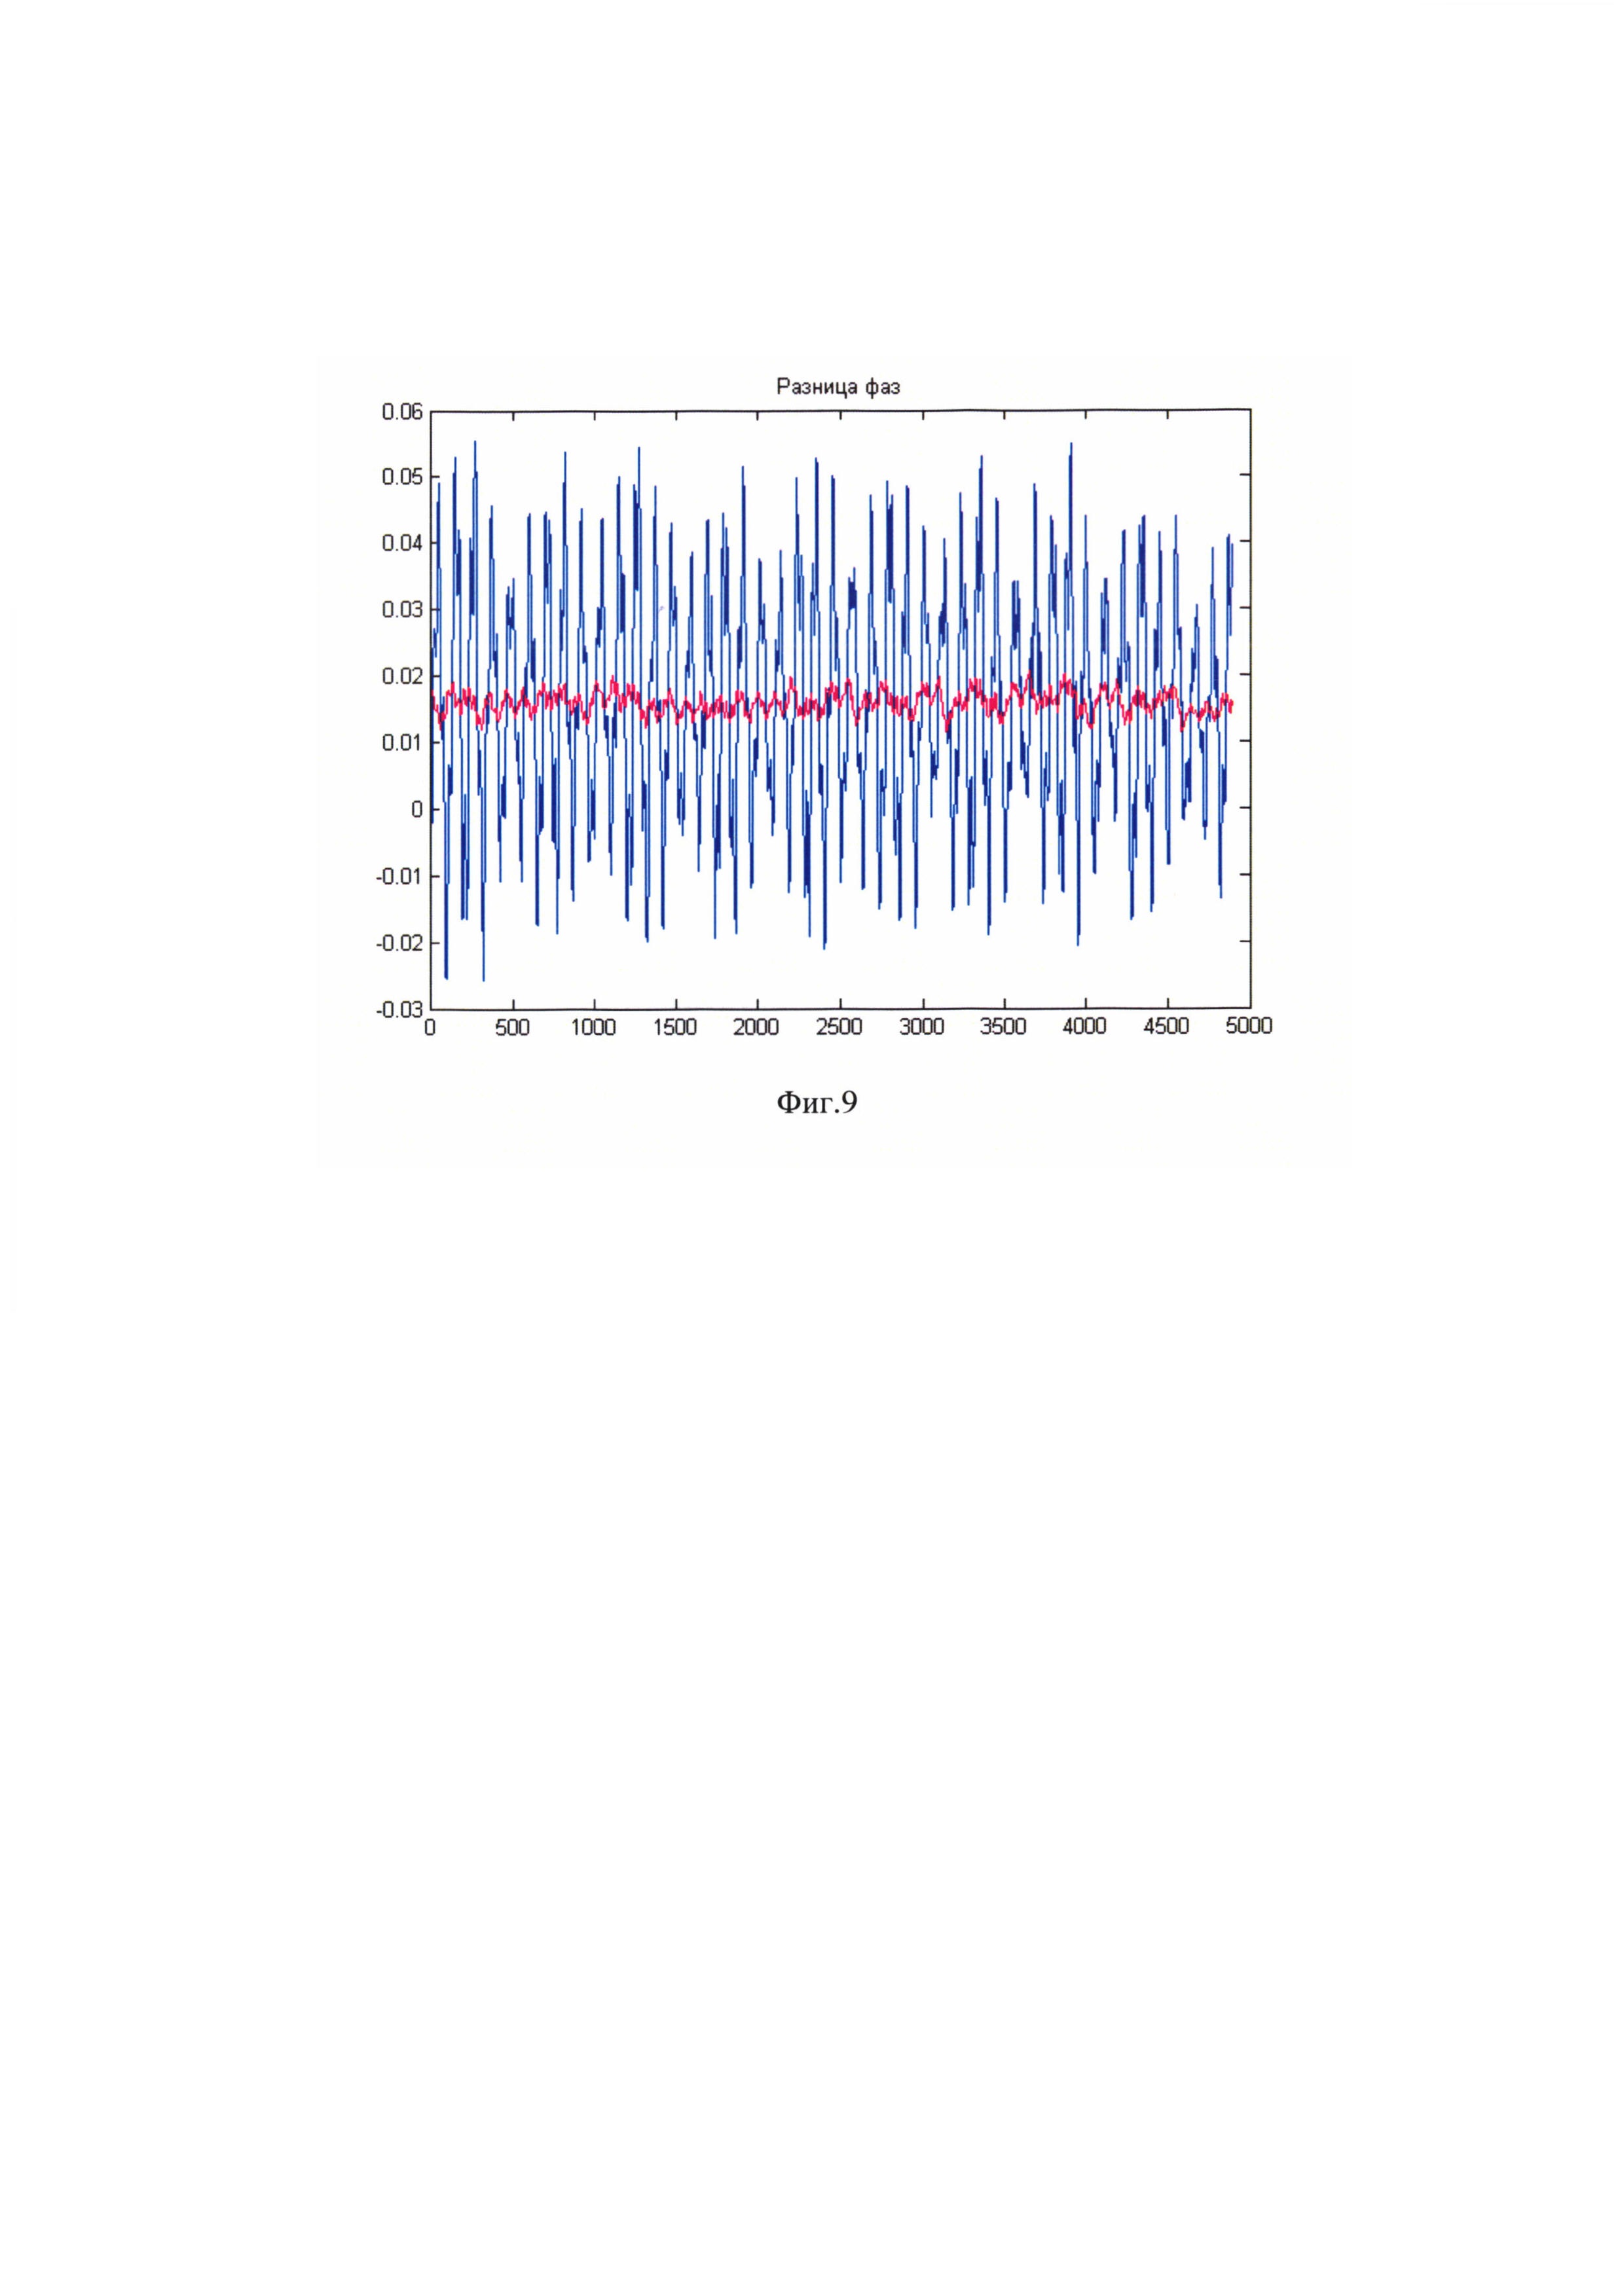 Способ вычисления текущей разности фаз и частоты сигналов кориолисовых расходомеров (варианты)